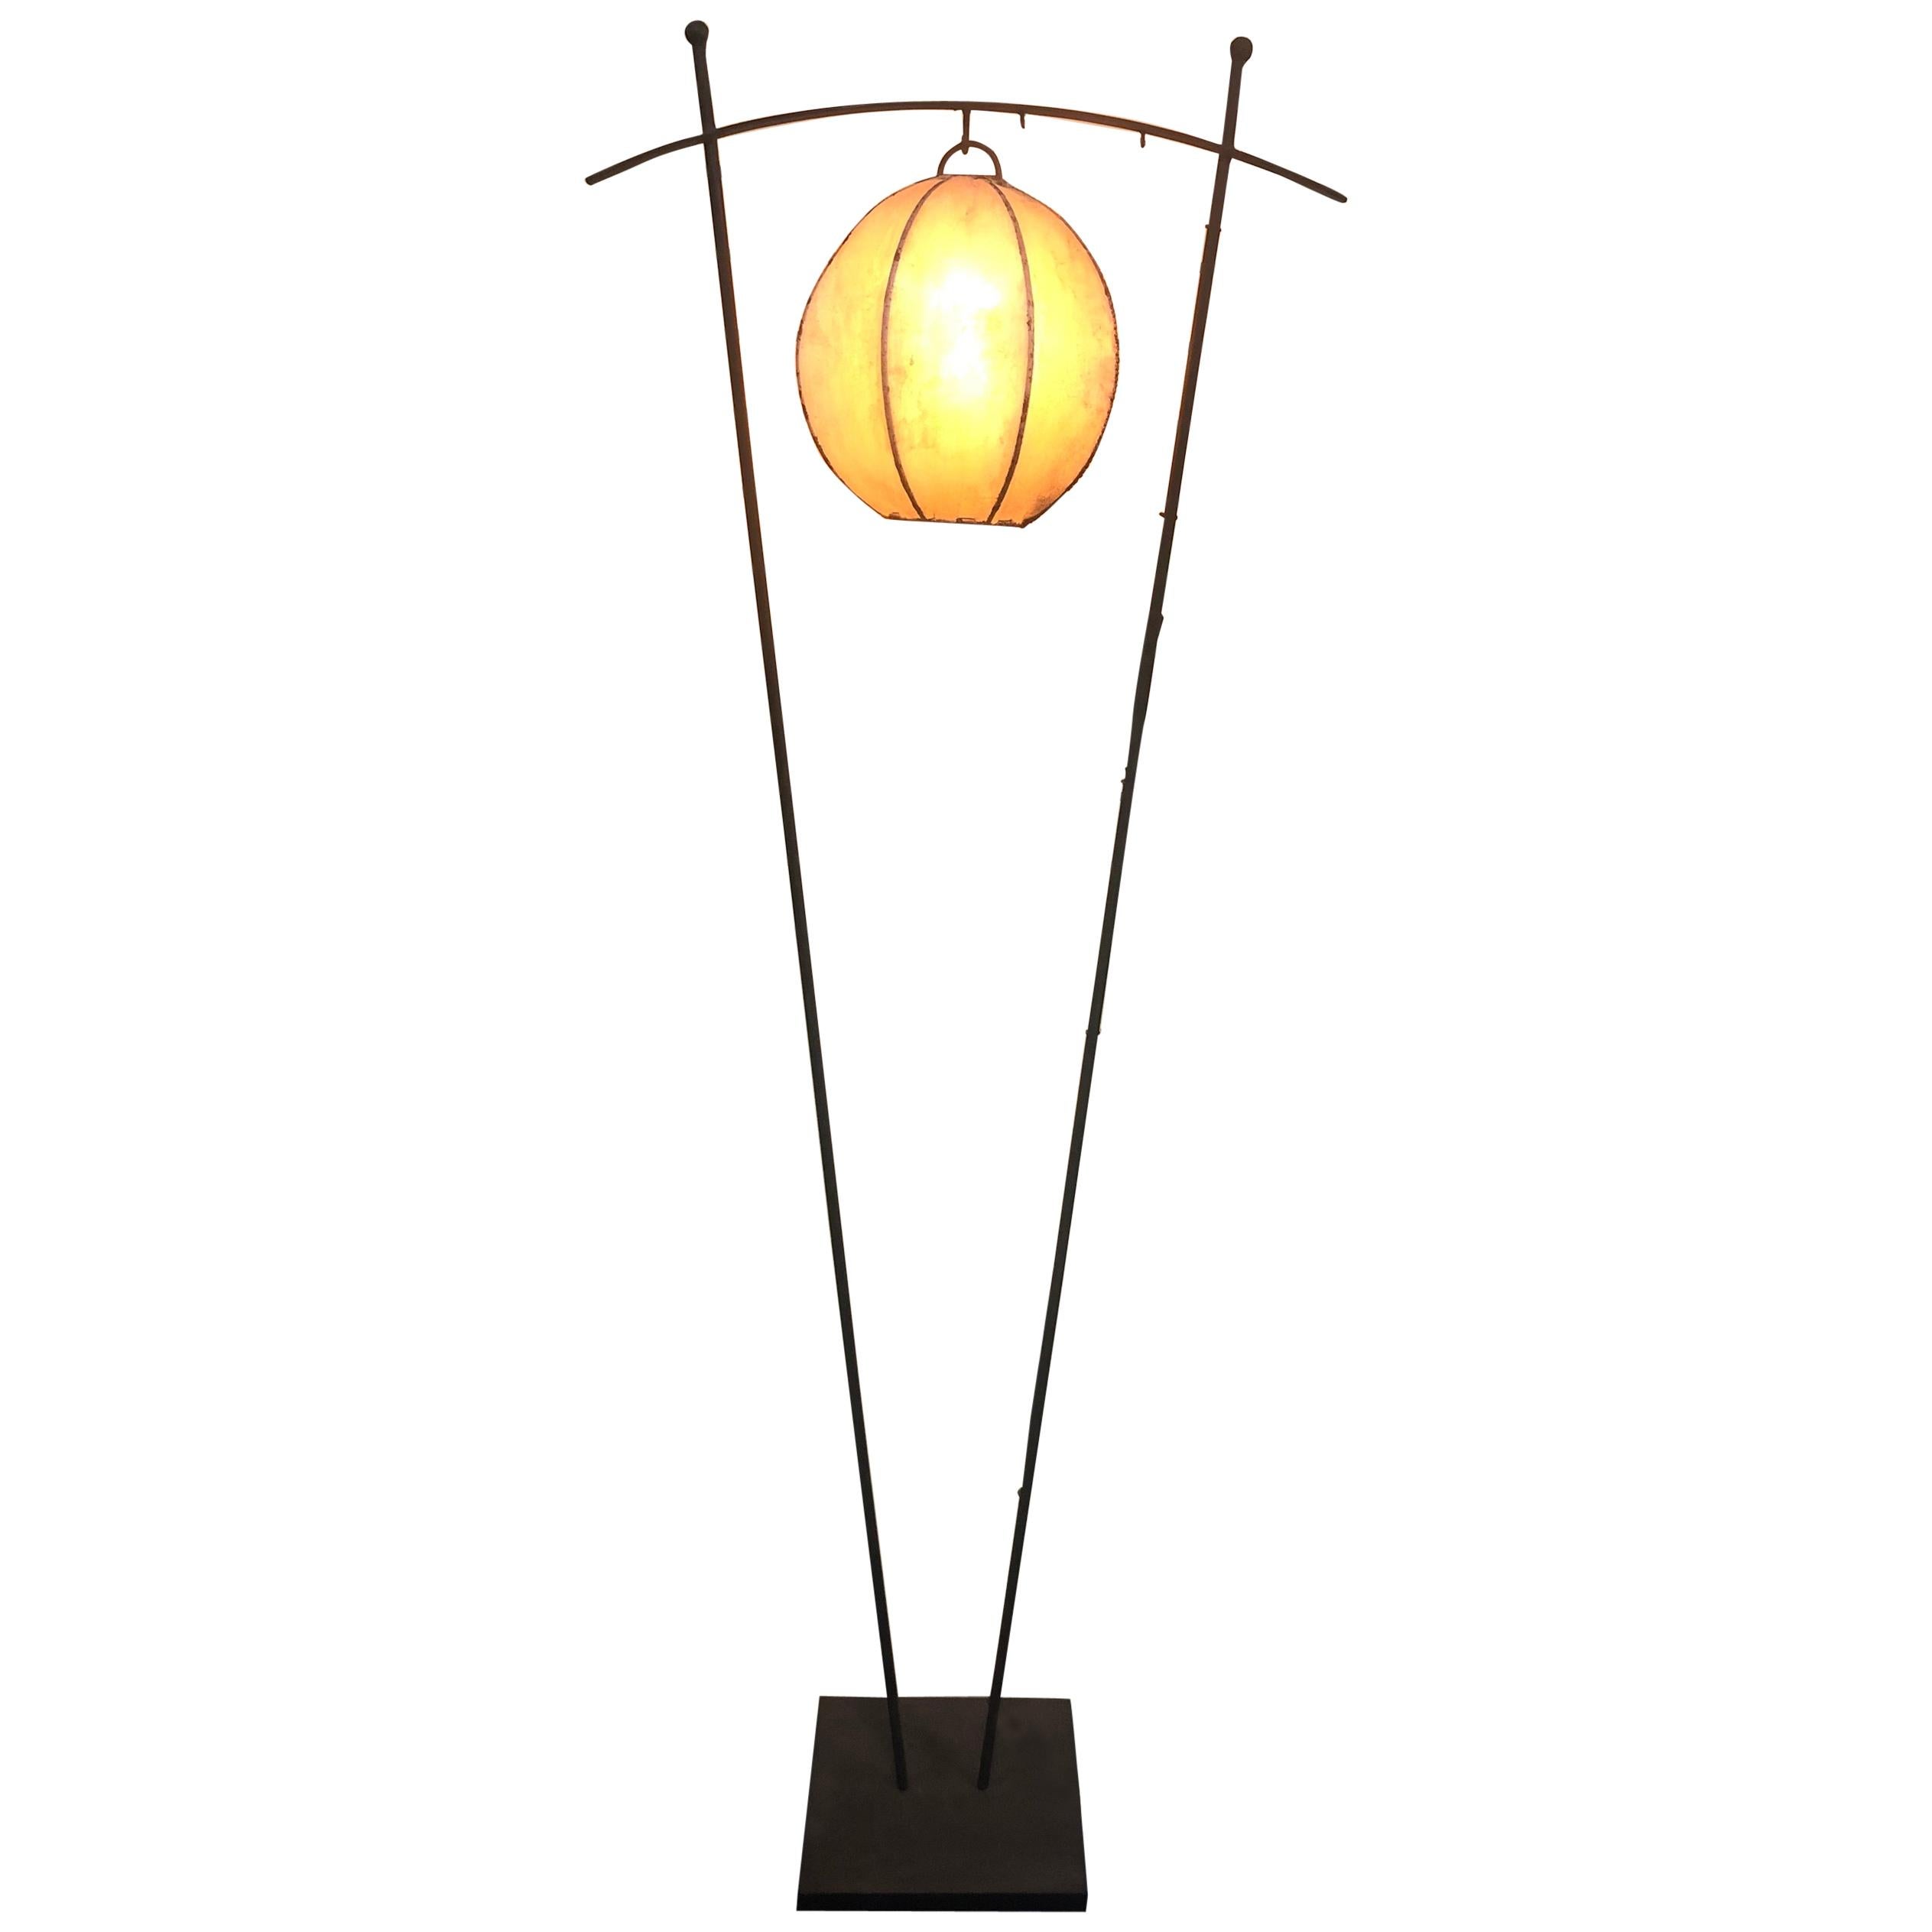 Maßgefertigte schmiedeeiserne Stehlampe mit Lammfell-Laternenschirm